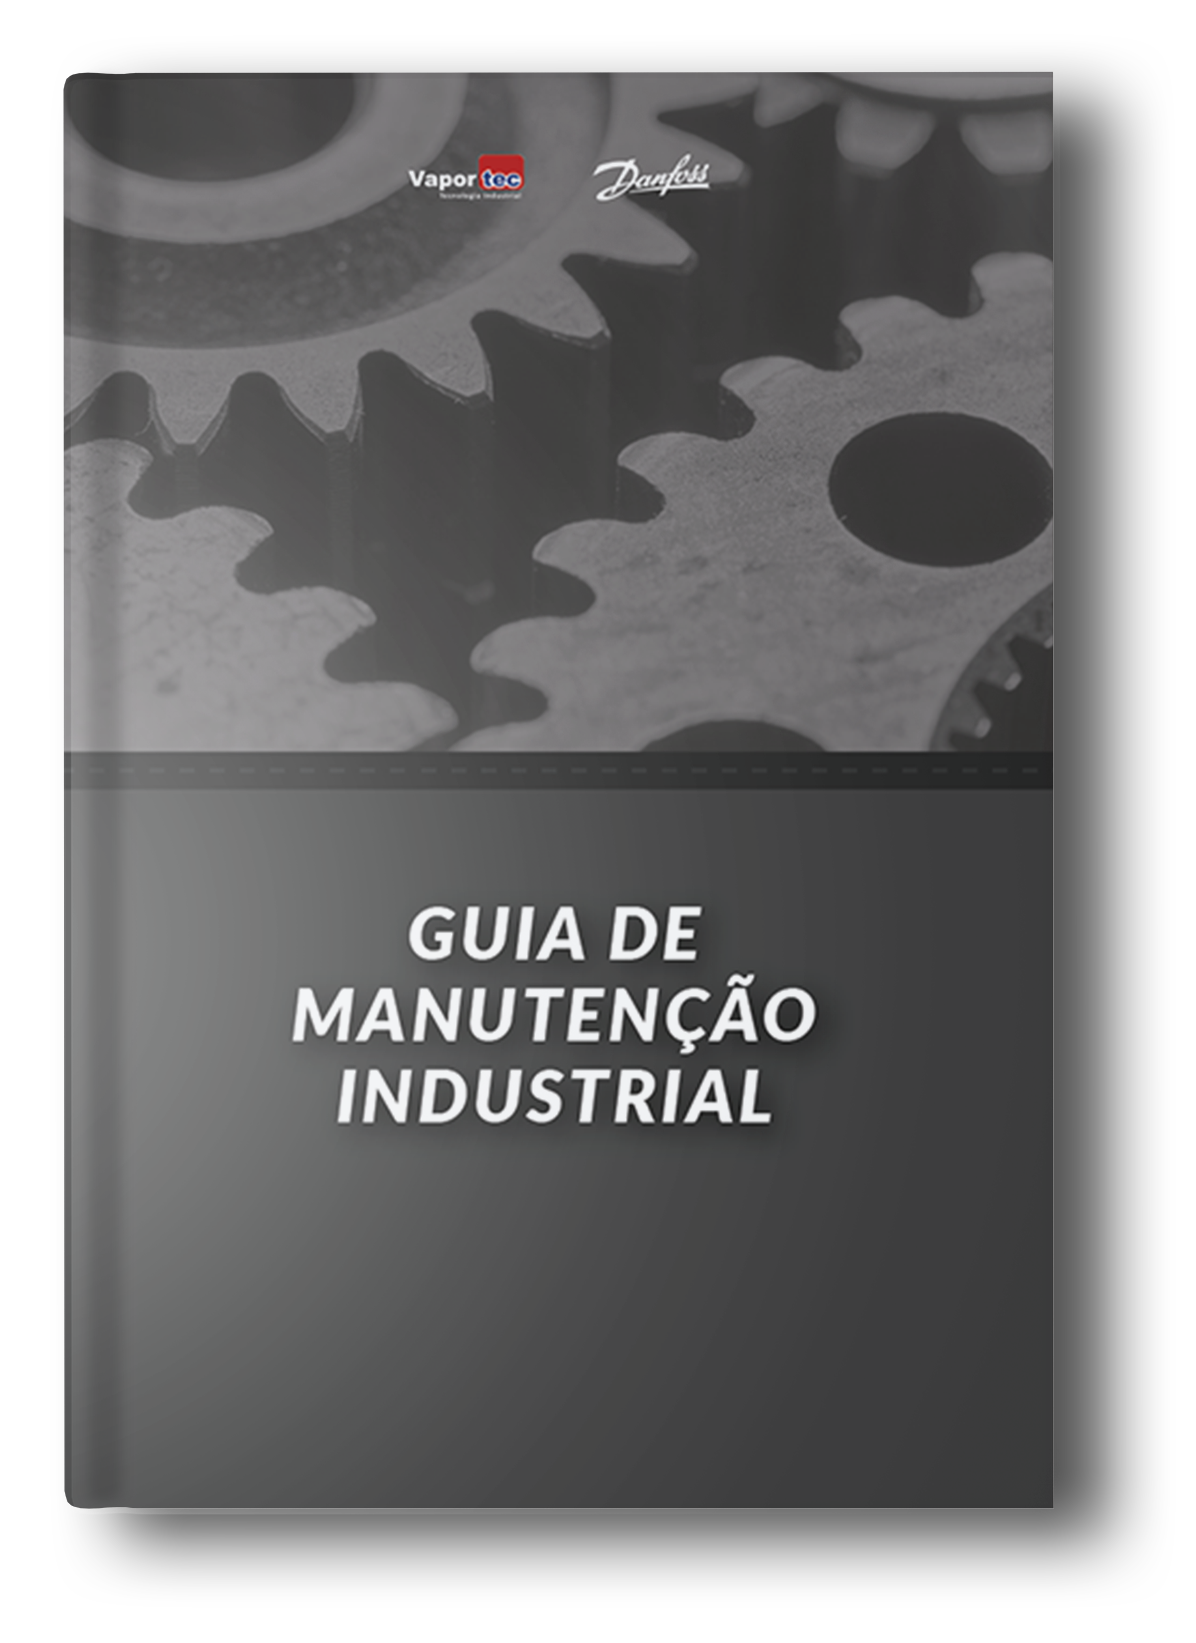 Guia de manutenção industrial